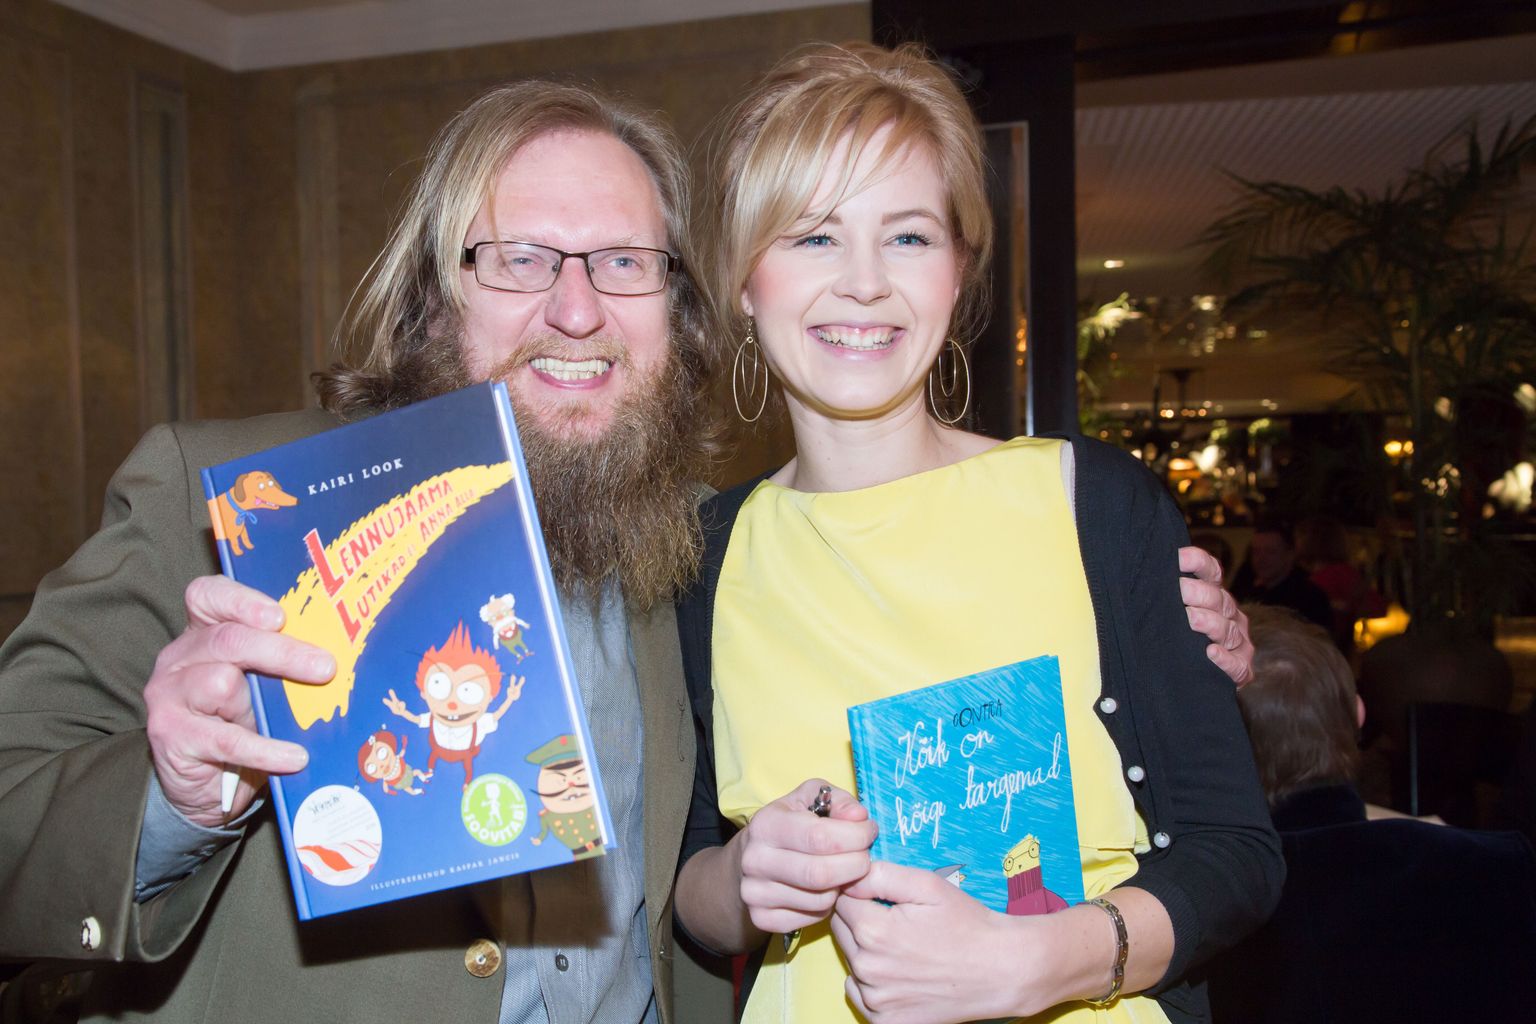 Eesti Kultuurkapitali kirjanduse sihtkapitali aastaauhindade laureaat Contra, kelle raamat "Kõik on kõige targemad" valiti 2014. aastal ilmunud lasteraamatute seast parimaks, ja nominent Kairi Look.